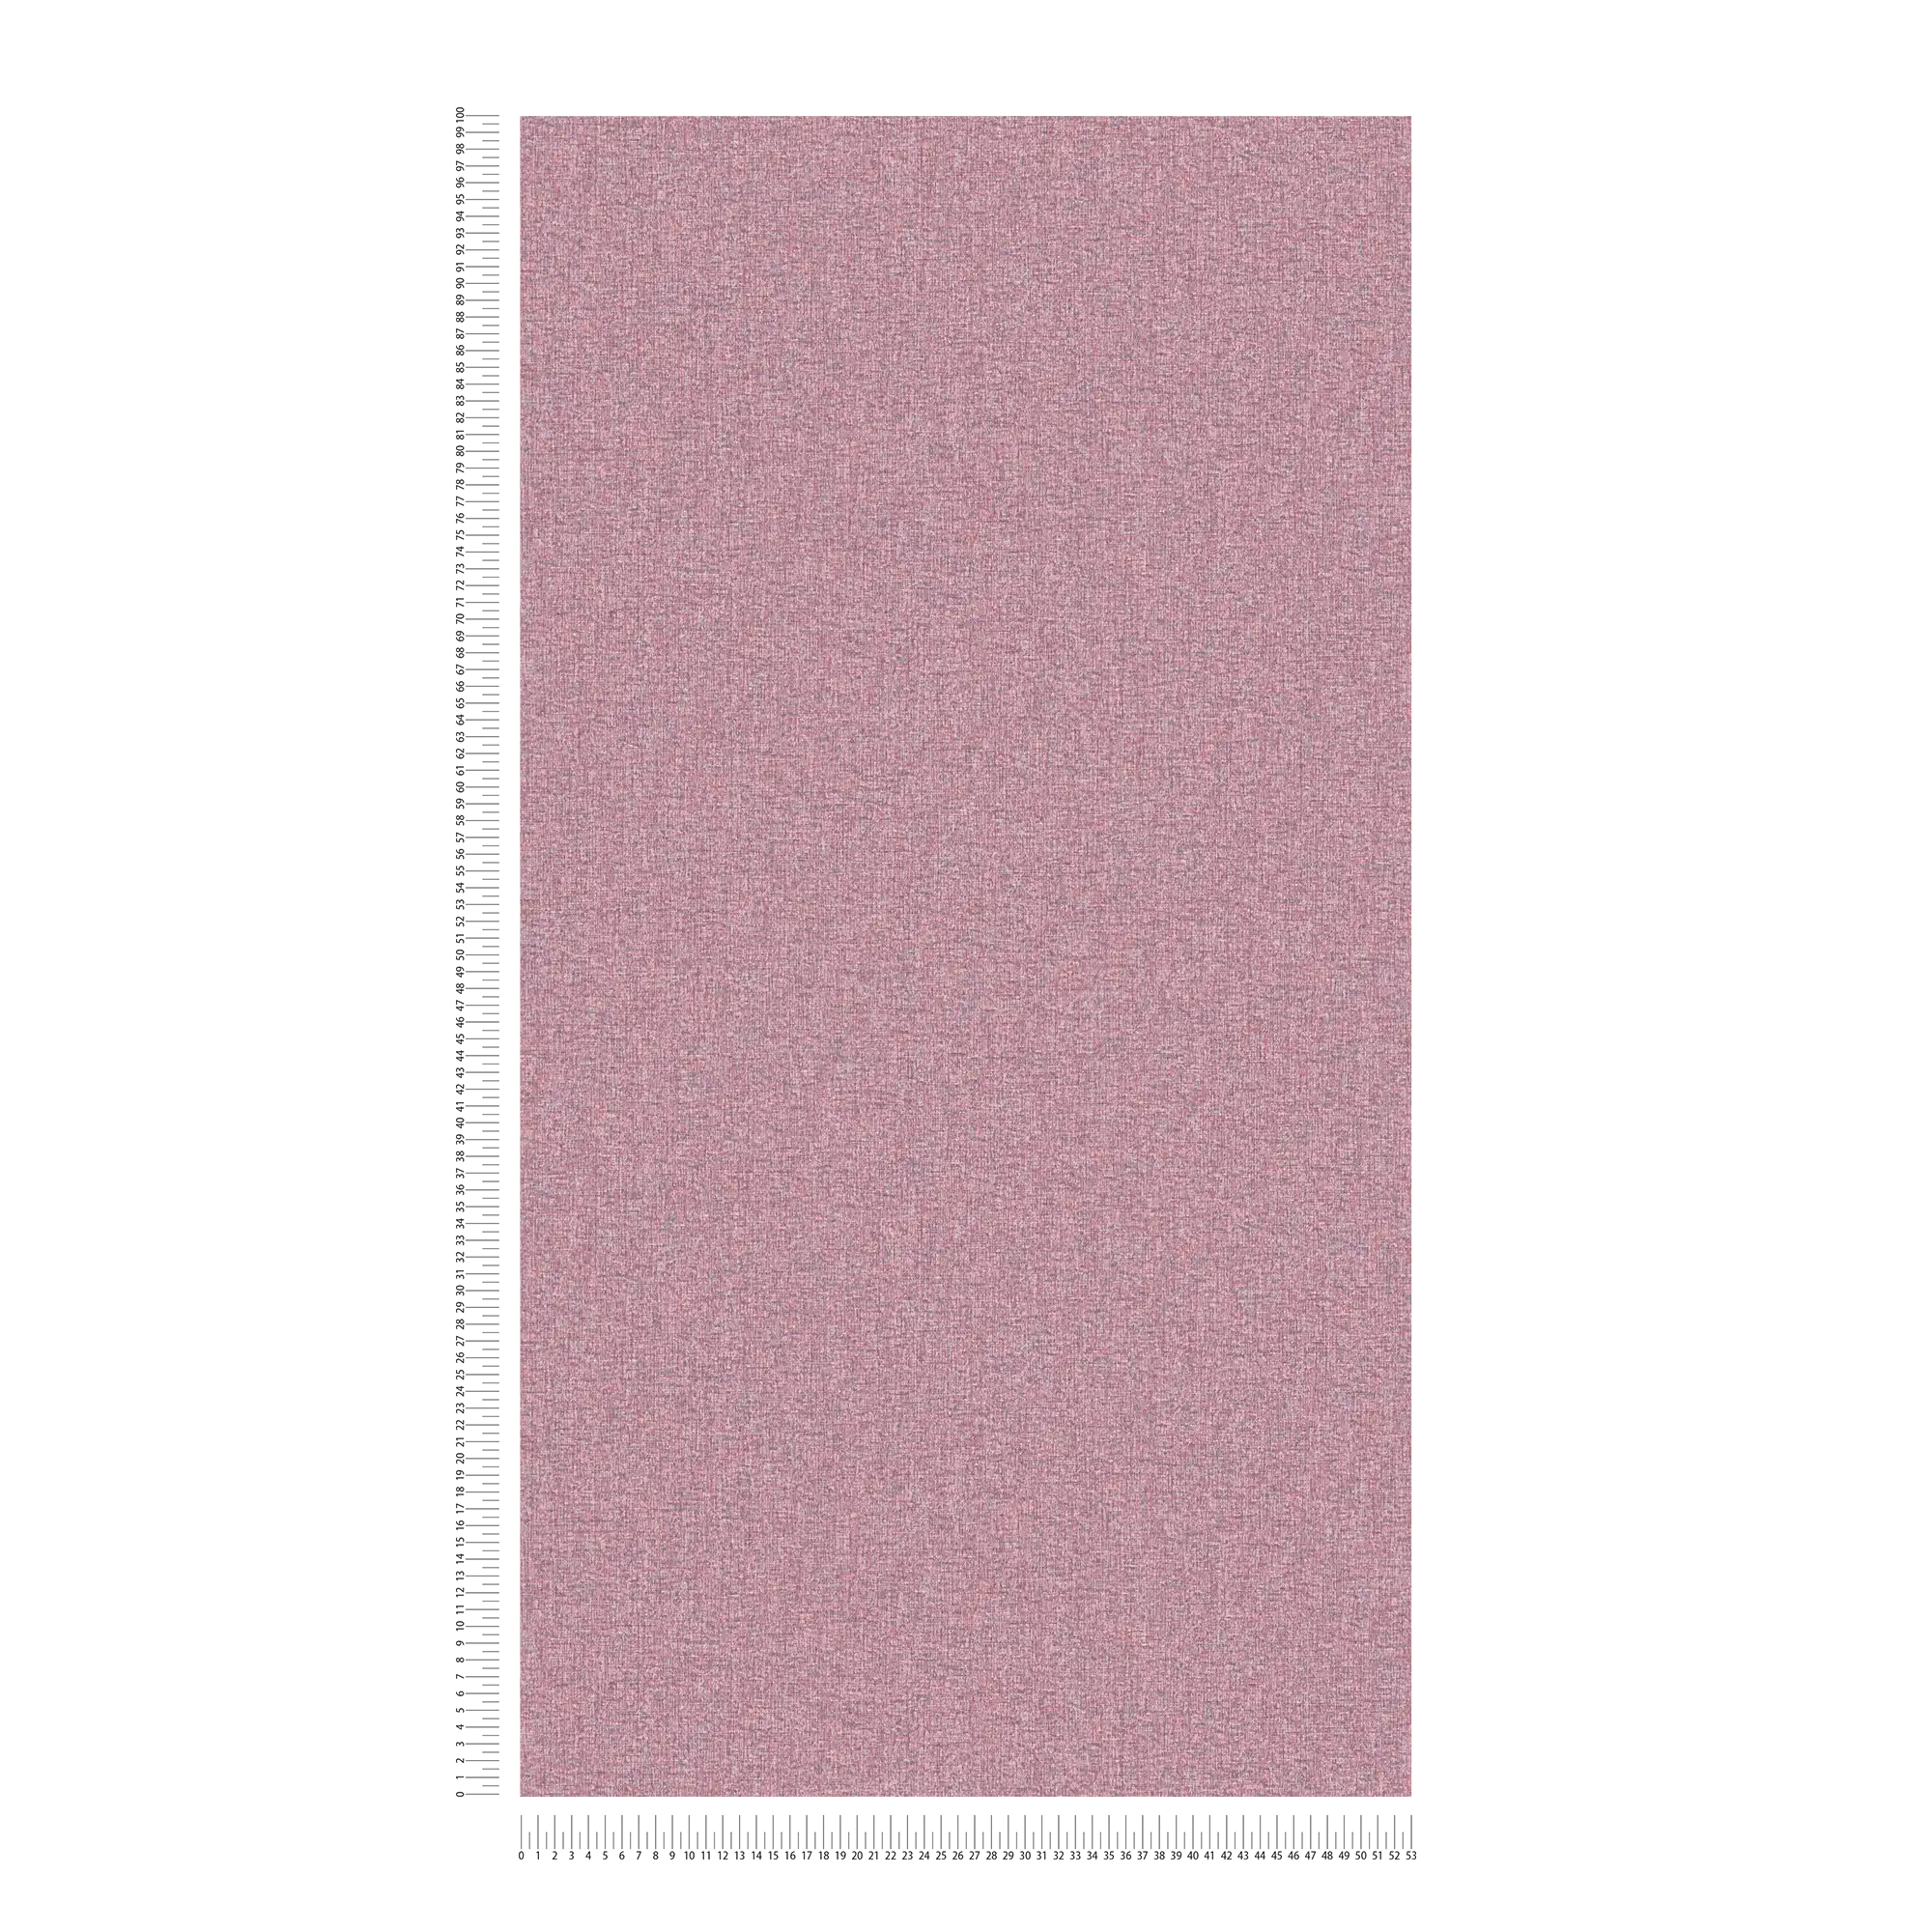             Vliesbehang met weefselstructuur effen, mat - paars, roze
        